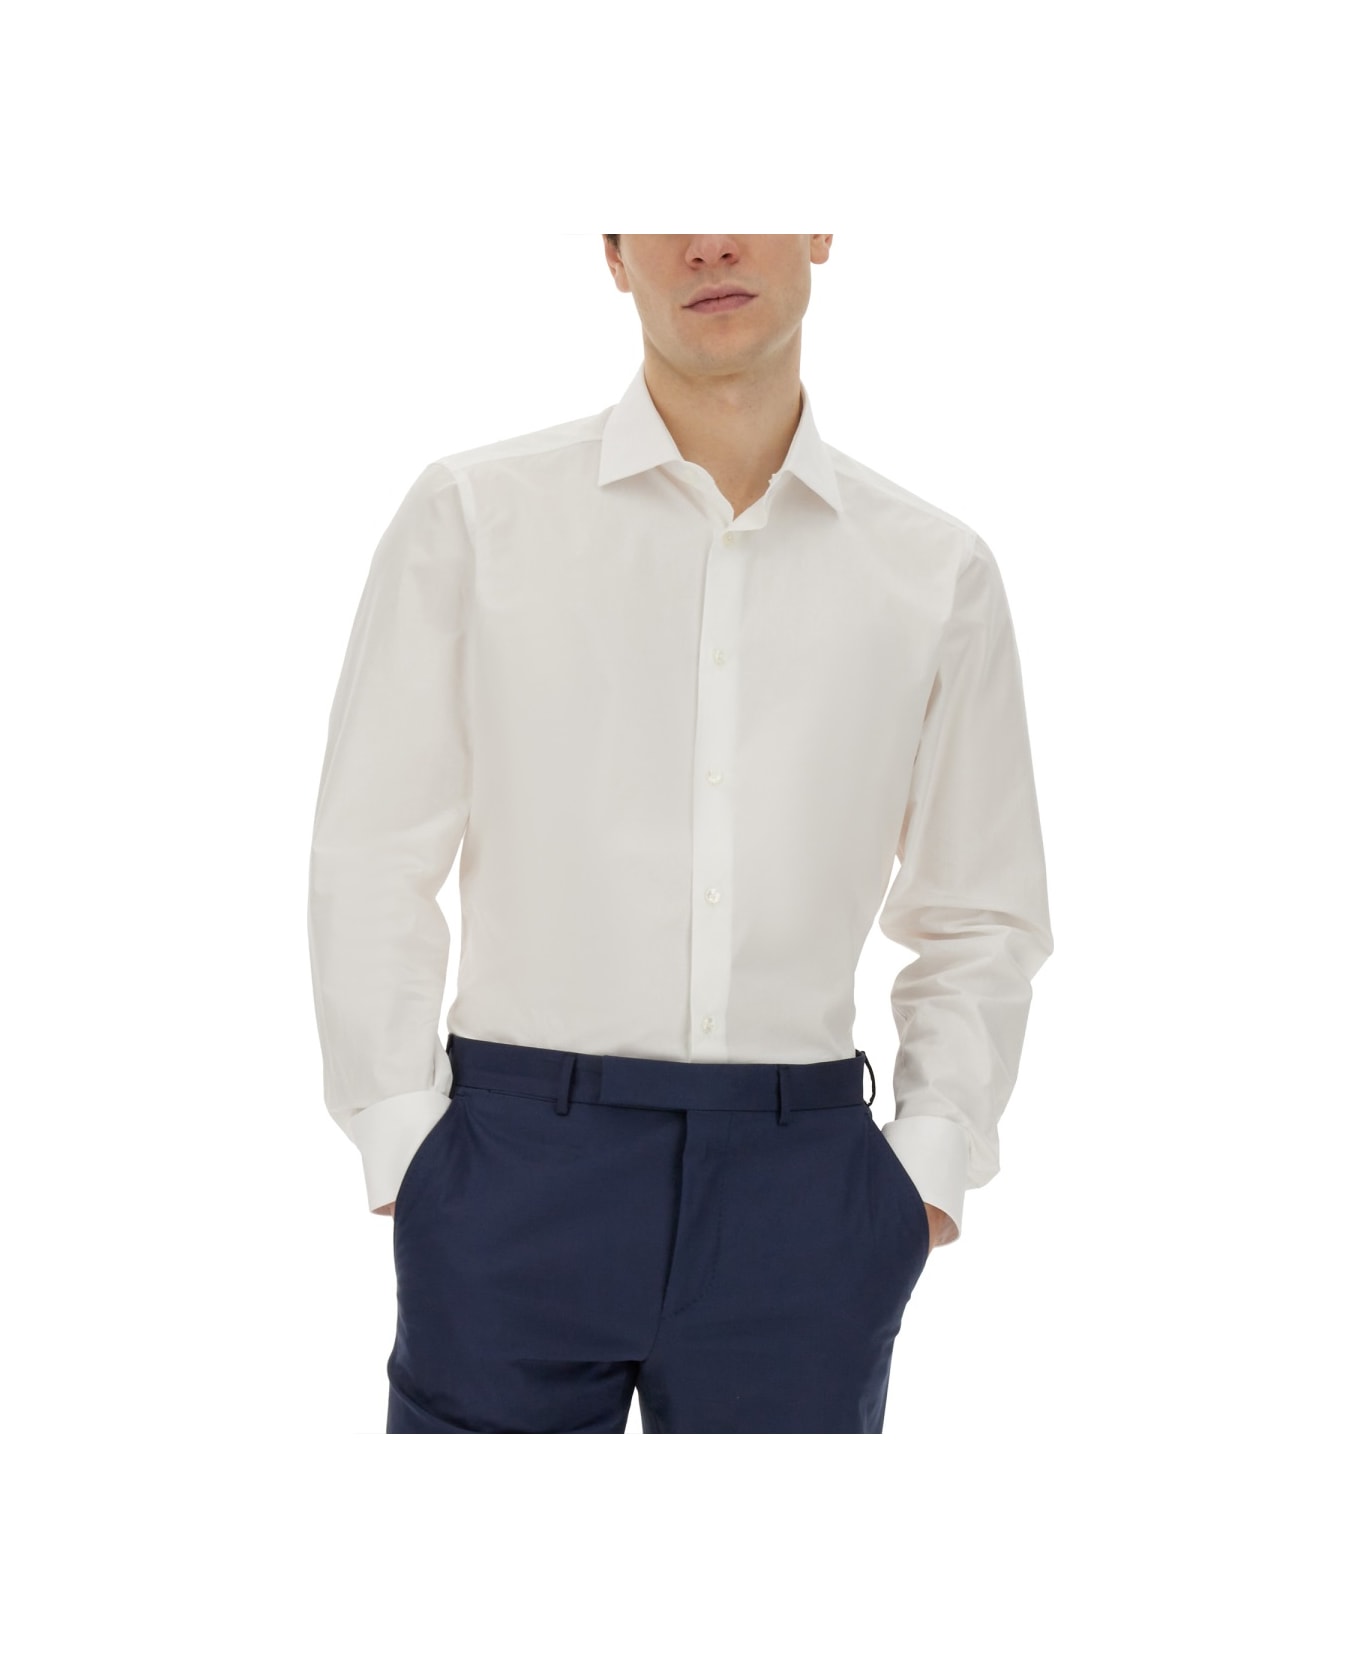 Zegna Cotton Shirt - WHITE